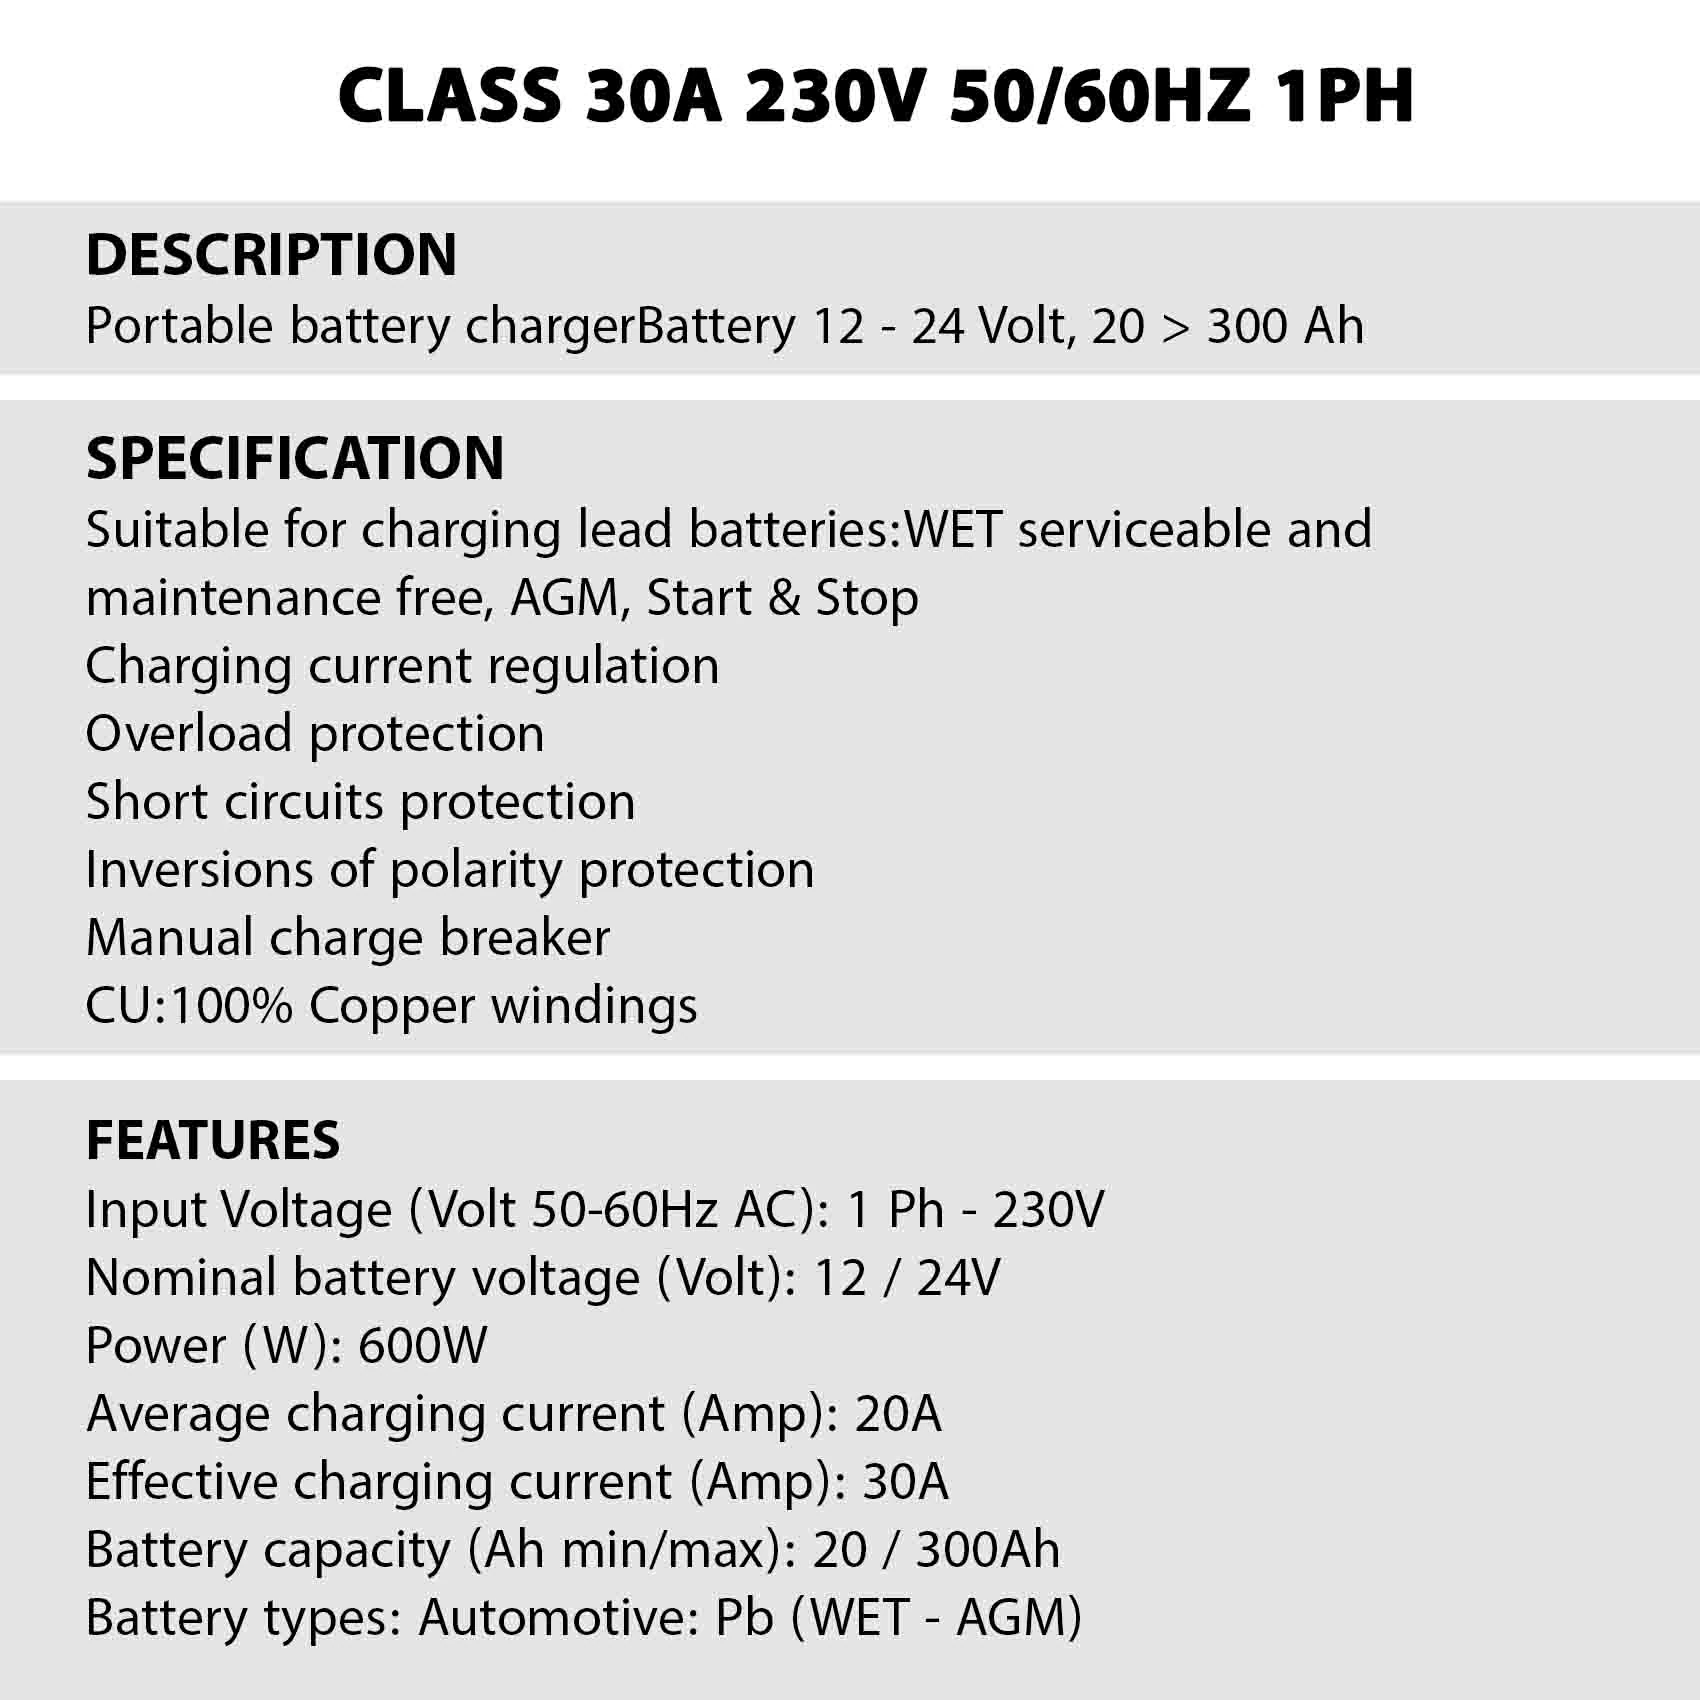 Chargeur Deca CLASS Booster 400E en Promotion